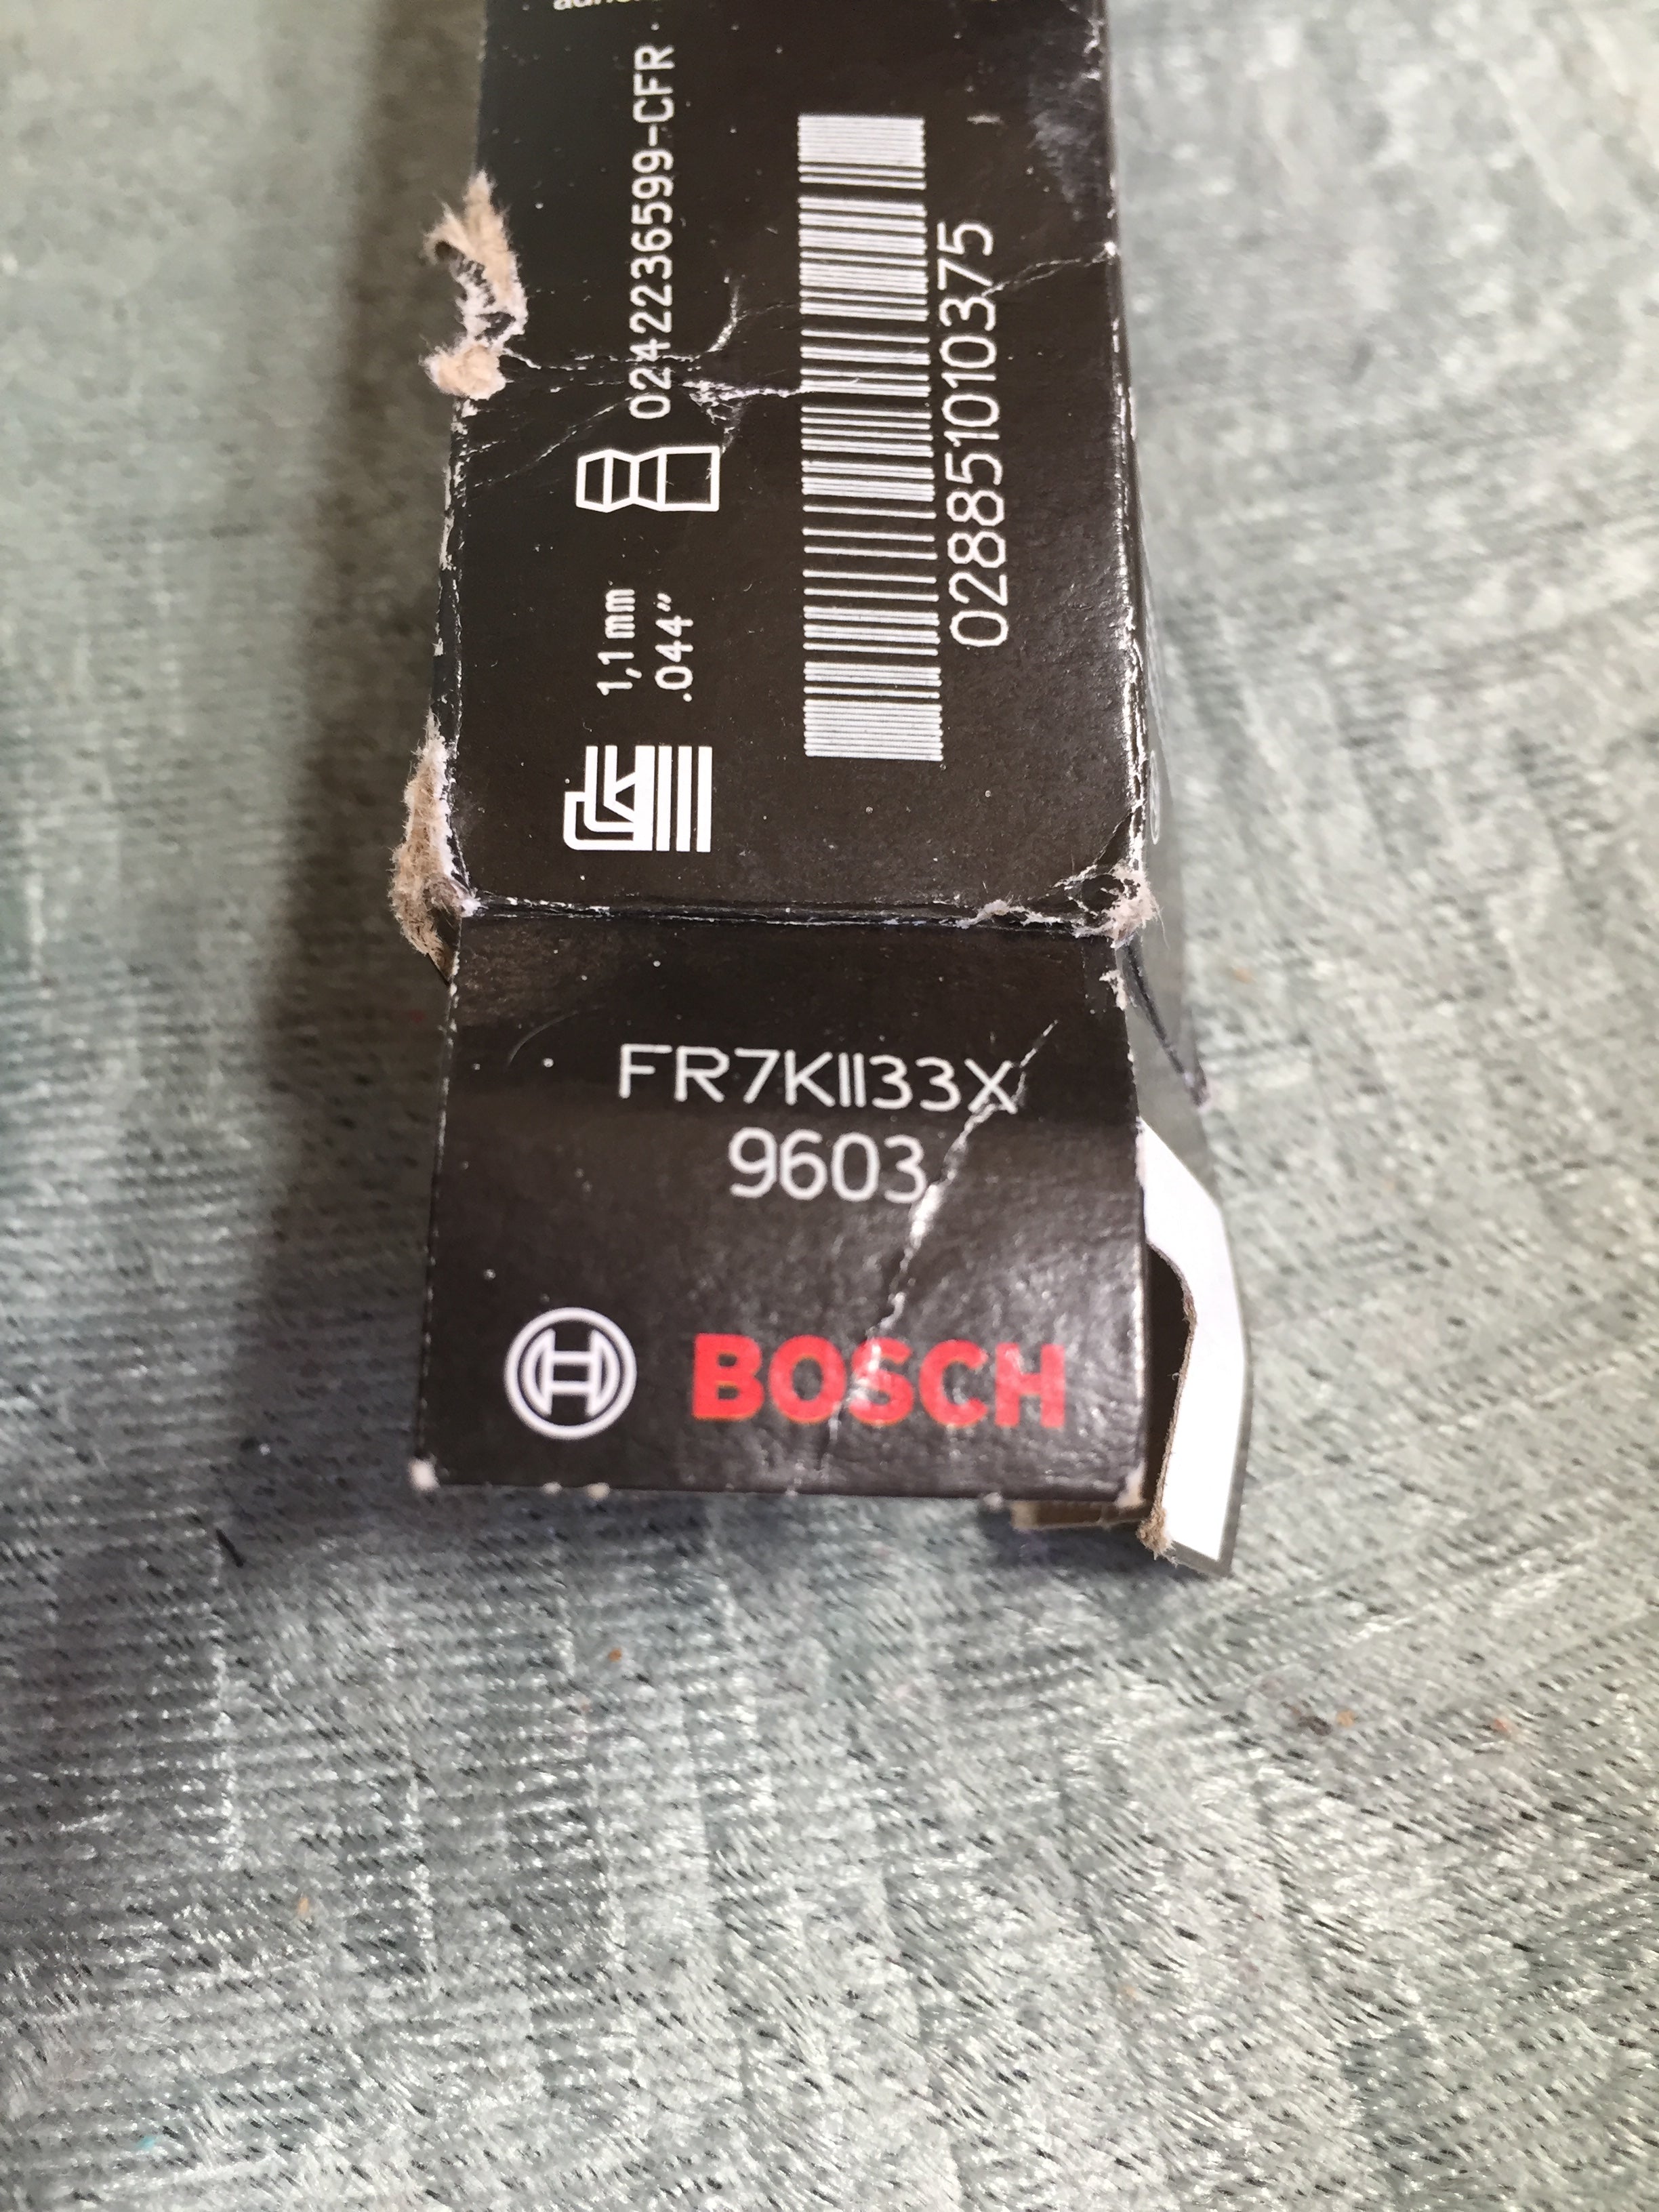 Bosch Automotive (9603) OE Fine Wire Double Iridium Spark Plug 4 Pack (7598629454062)